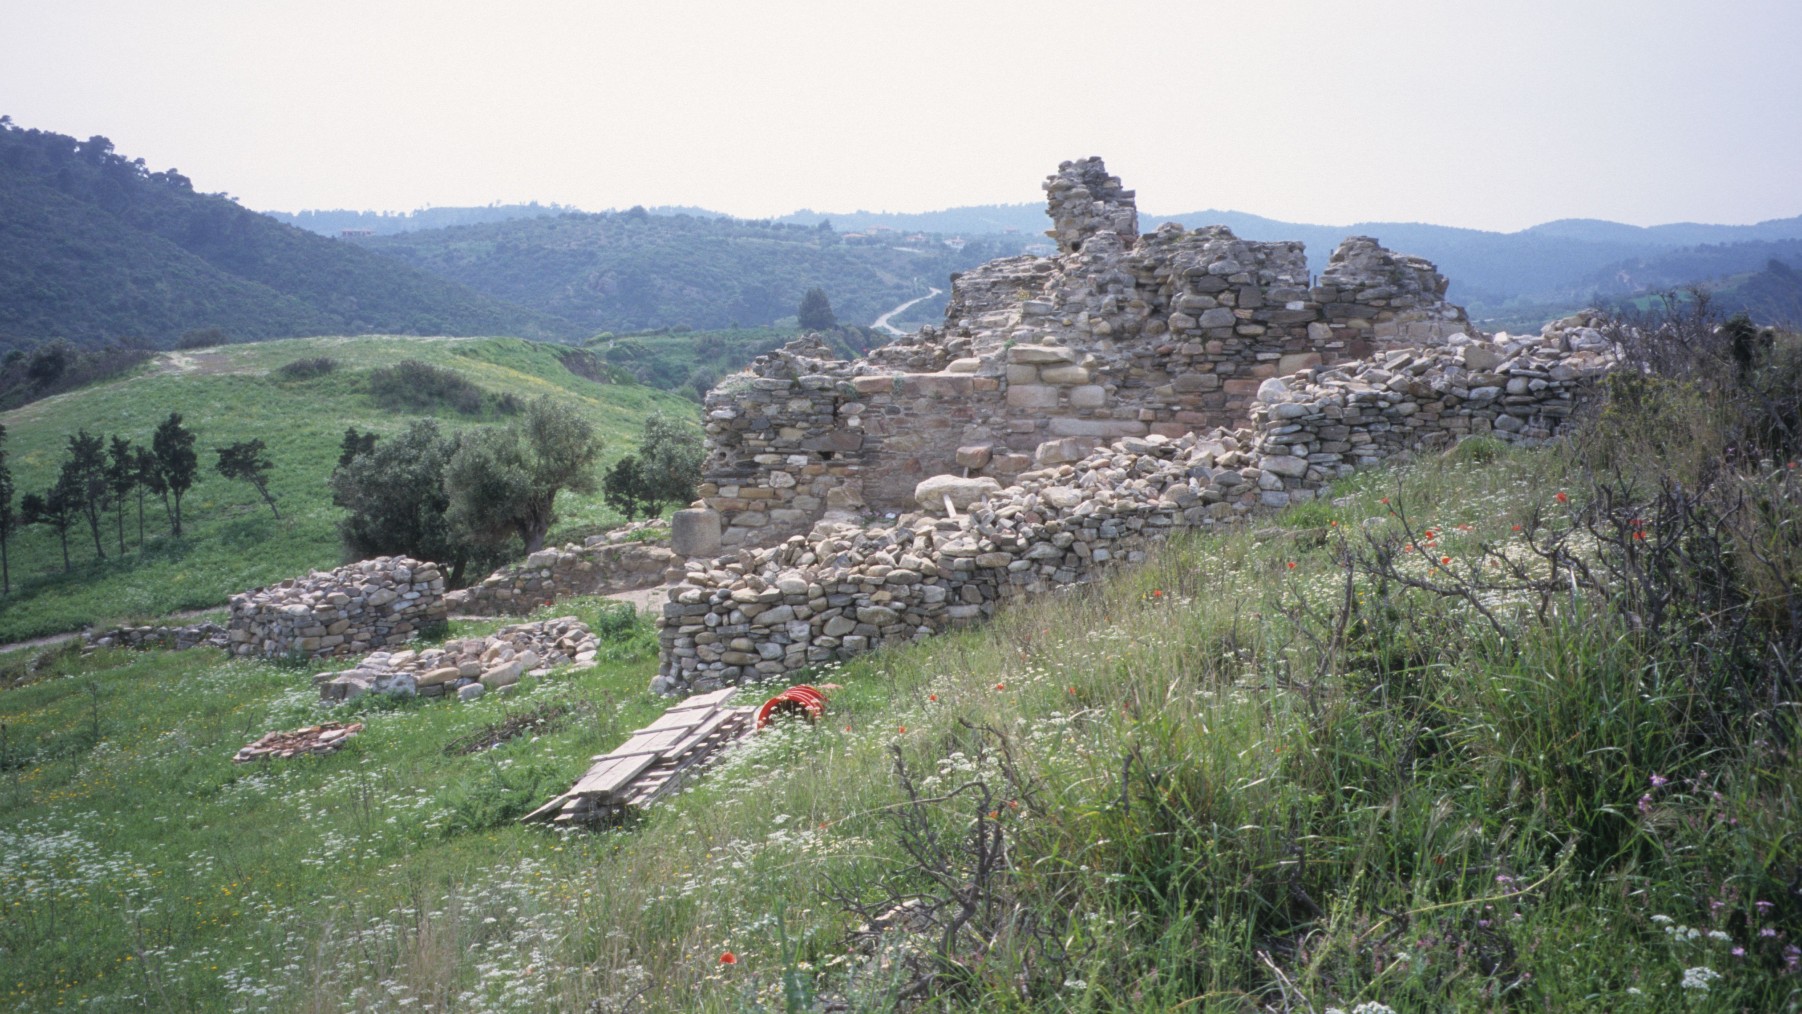 Otkrivena je srednjovekovna sablja u manastiru na Svetoj Gori koja je možda pripadala turskim gusarima